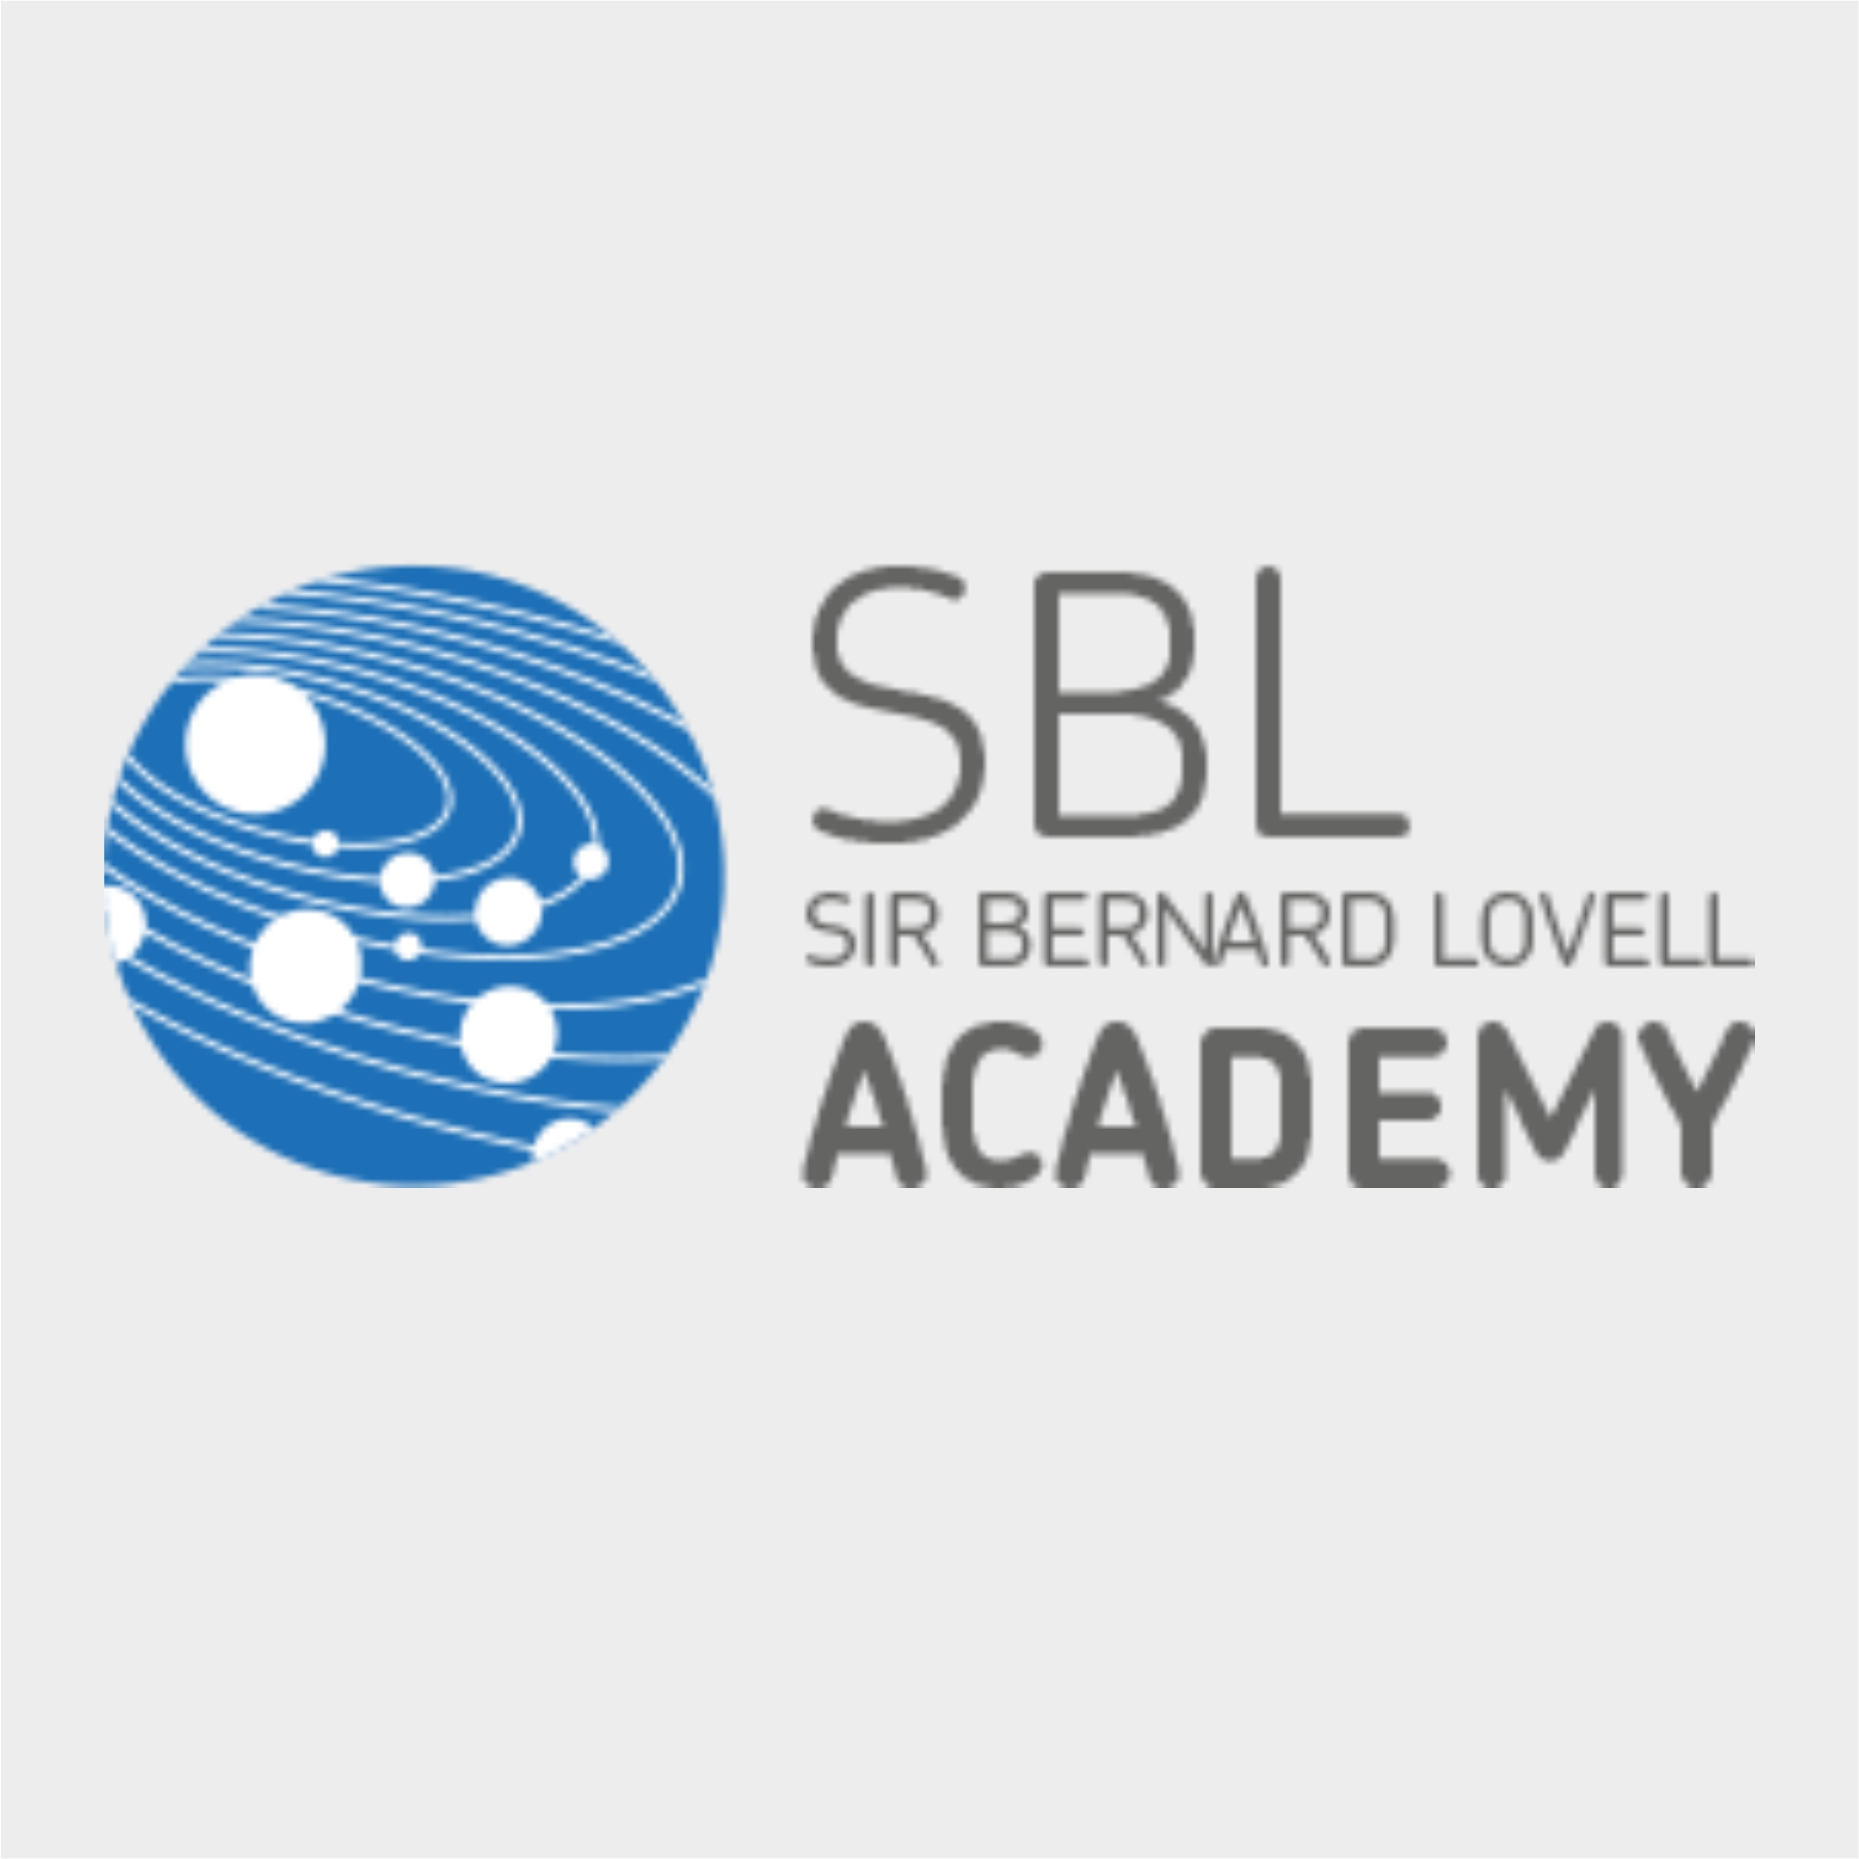 Sir Bernard Lovell Academy.jpg